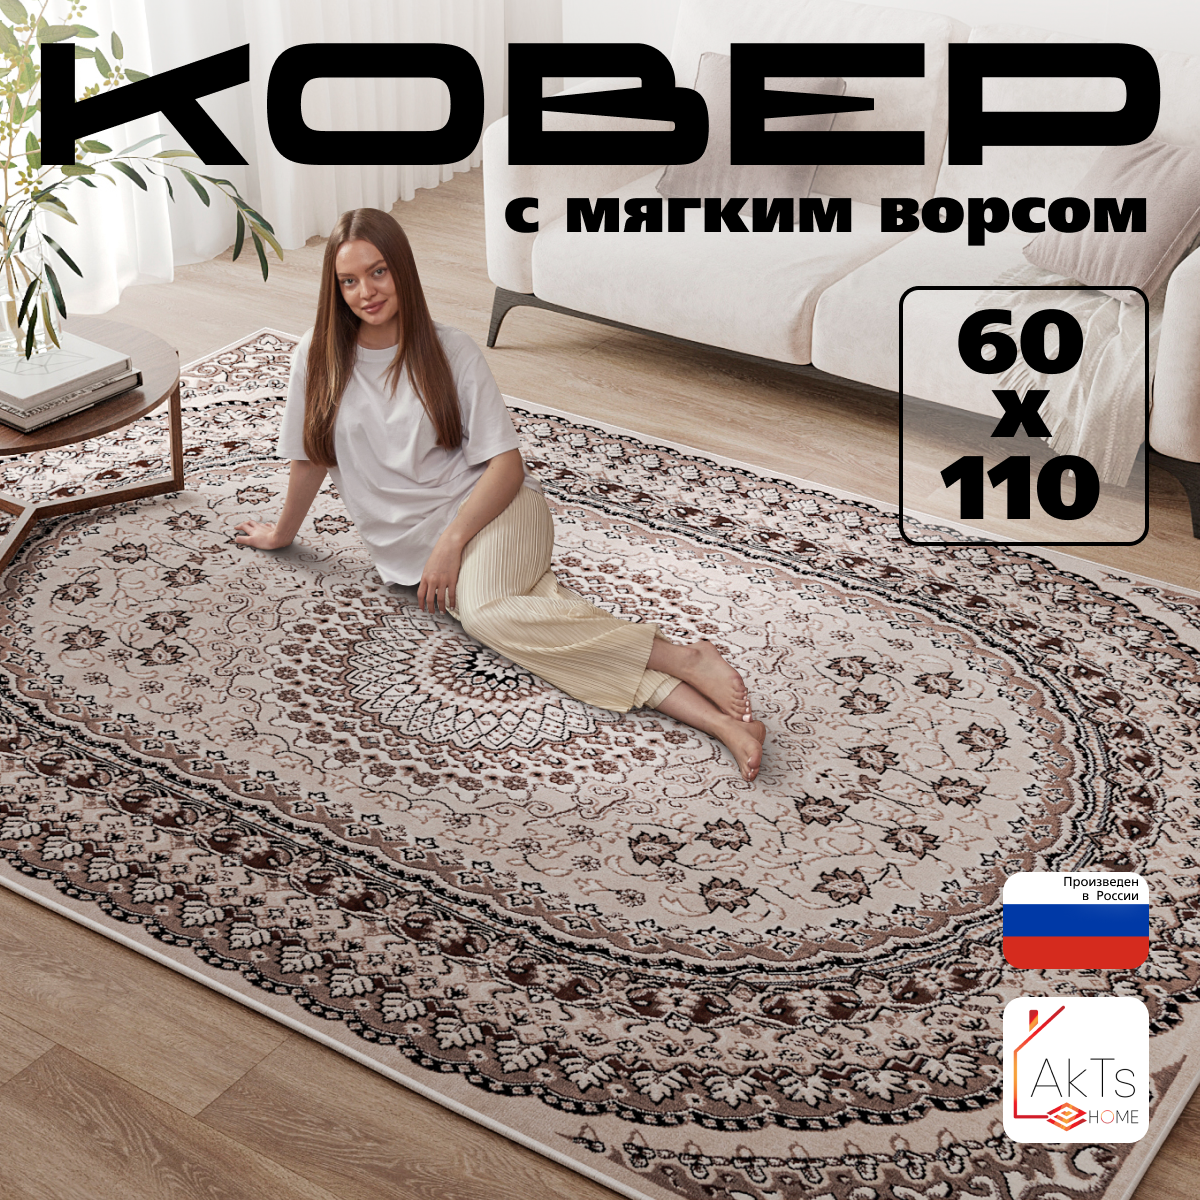 Российский прямоугольный ковер на пол 60 на 110 см в гостиную, зал, спальню, кухню, детскую, прихожую, кабинет, комнату